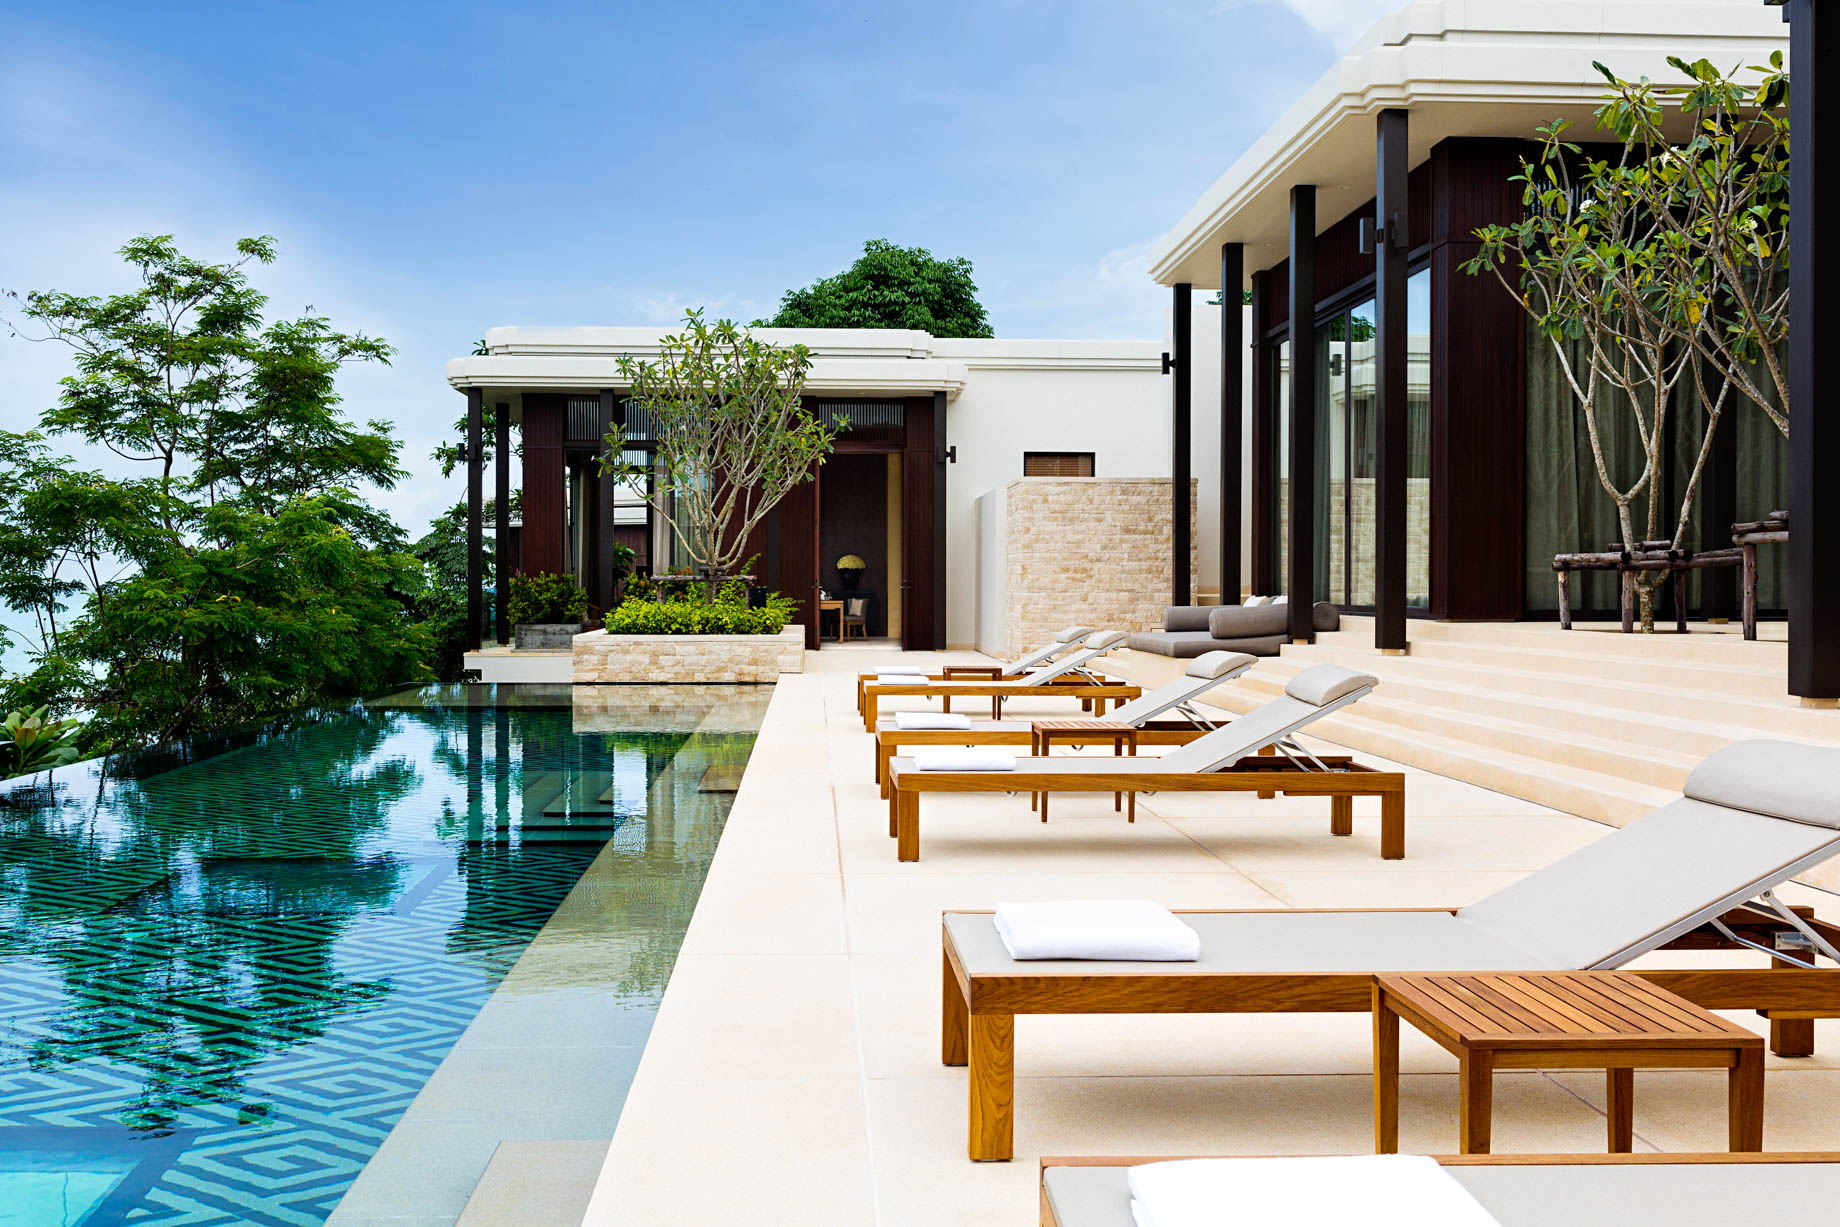 Anantara Layan Phuket Resort & Residences – Thailand – Residence Pool Deck Terrace